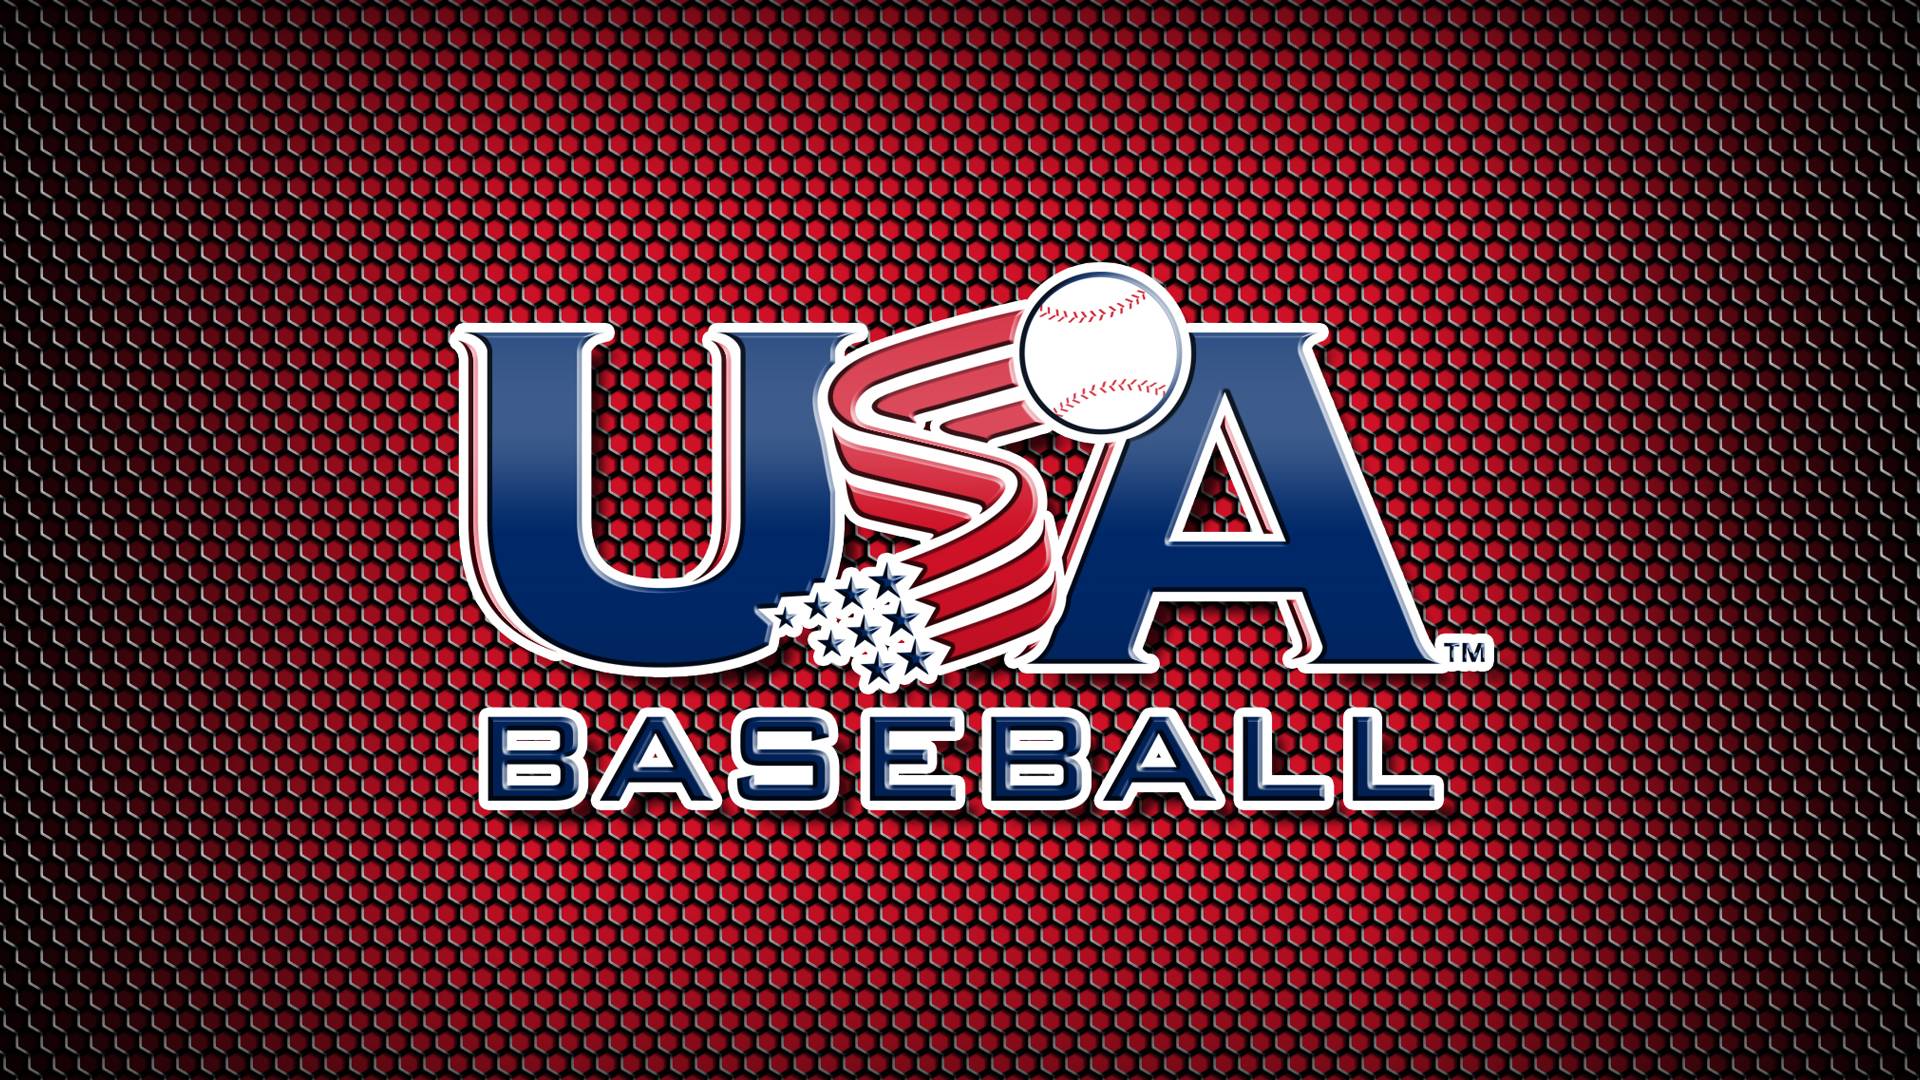 USABaseball.com: About USA Baseball: Wallpaper